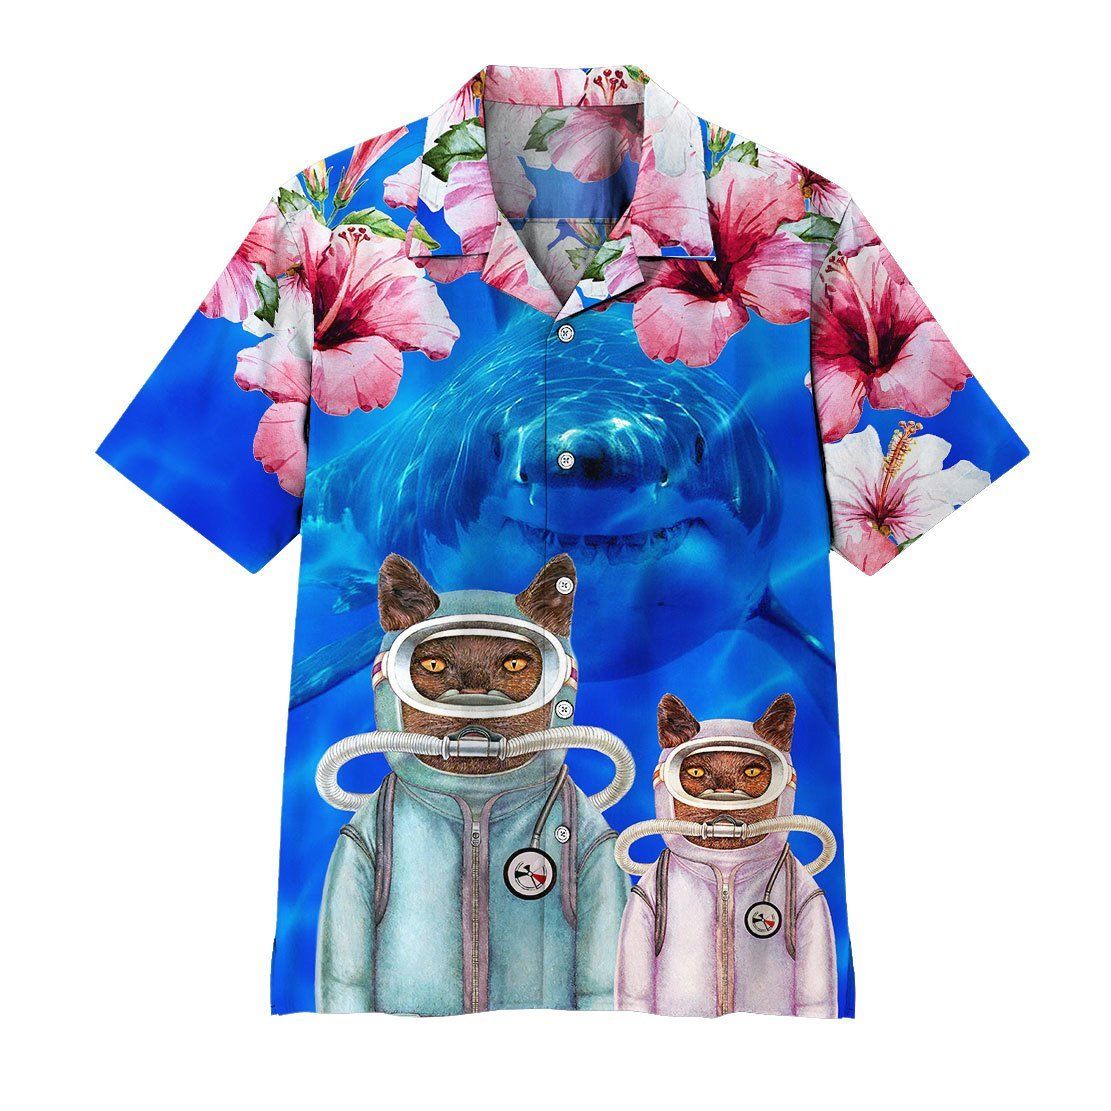 Gearhuman 3D Scuba Diving Cats With Shark Behind Hawaii Shirt ZK2005215 Hawai Shirt Short Sleeve Shirt S 